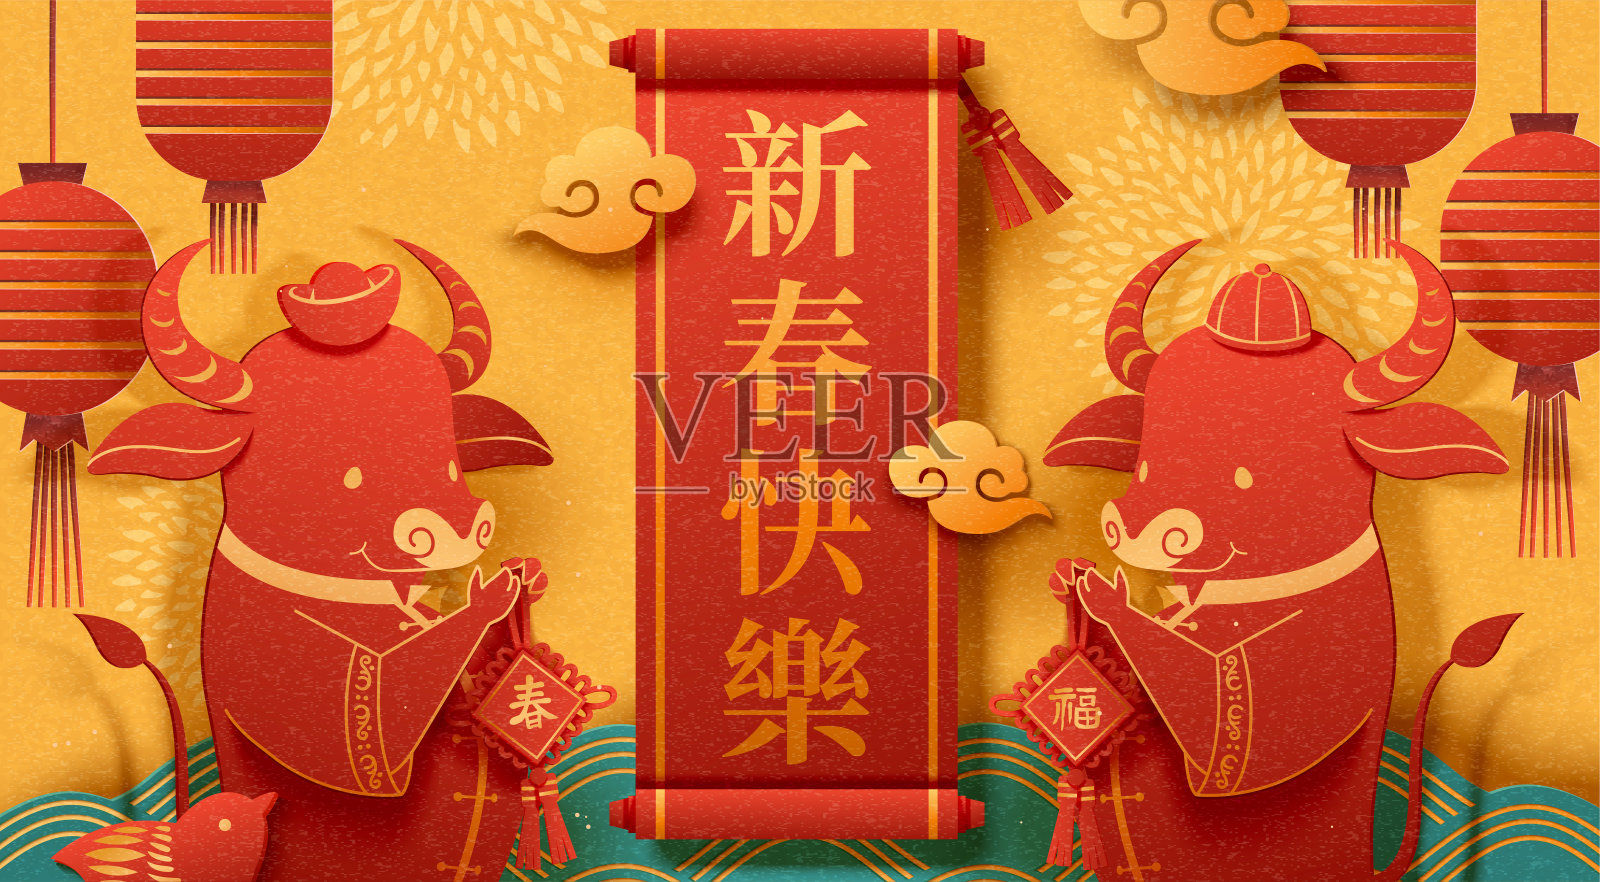 中国新年横幅设计模板素材